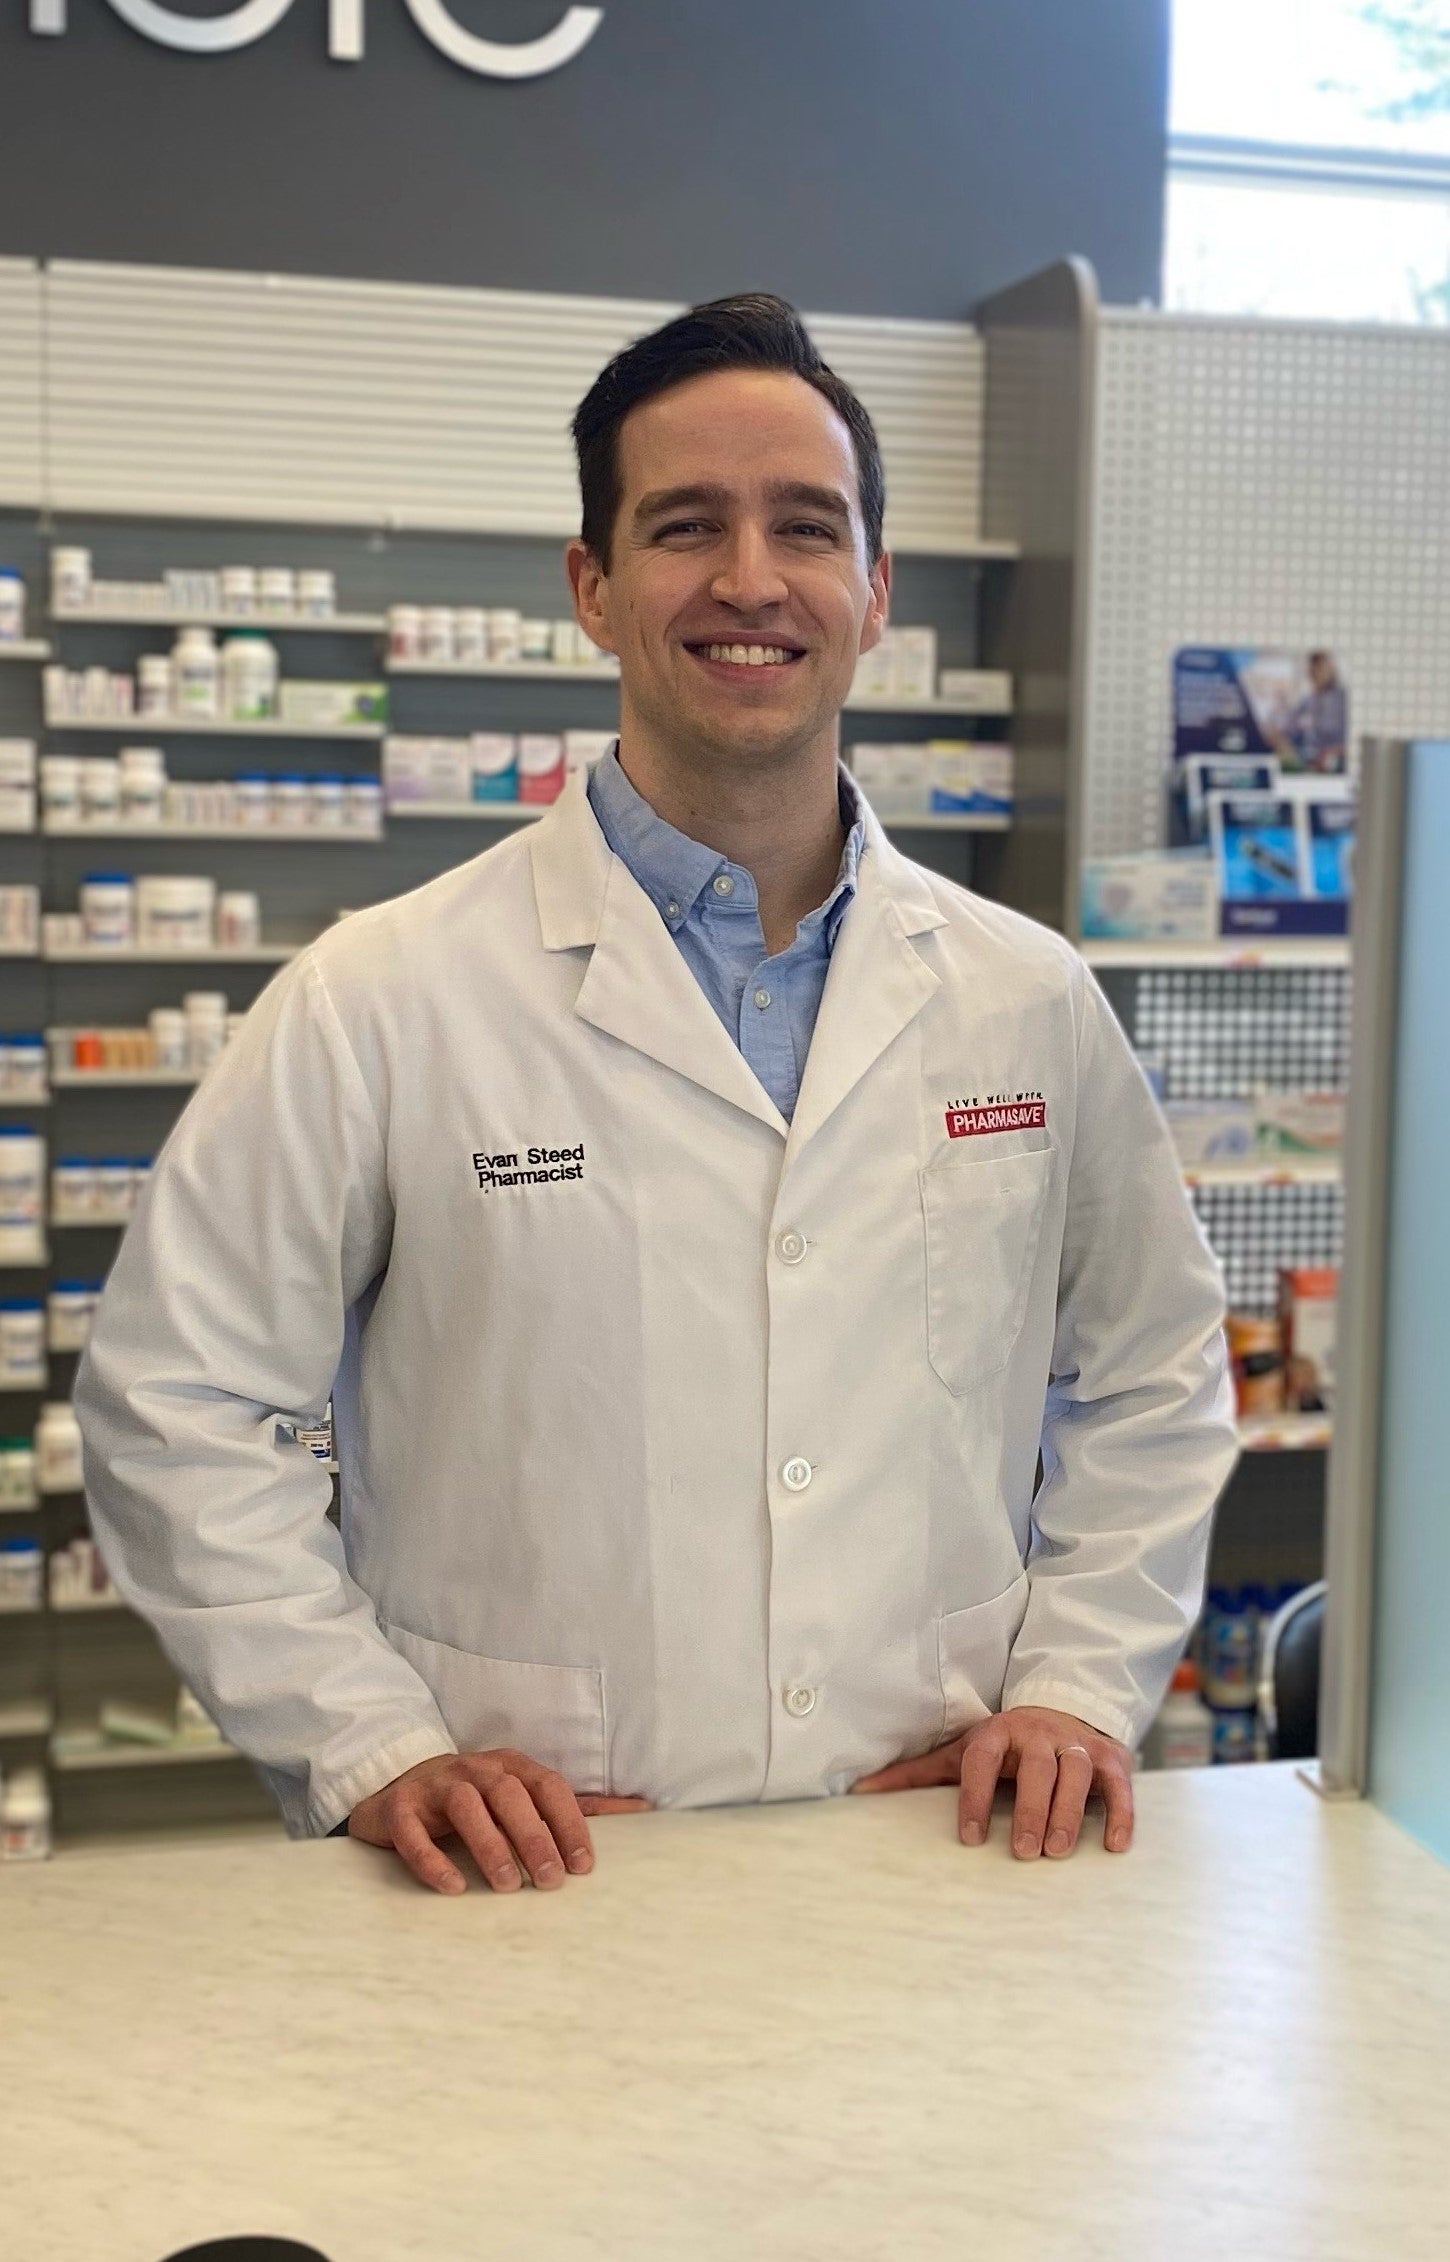 Evan Steed in his pharmacy smiling